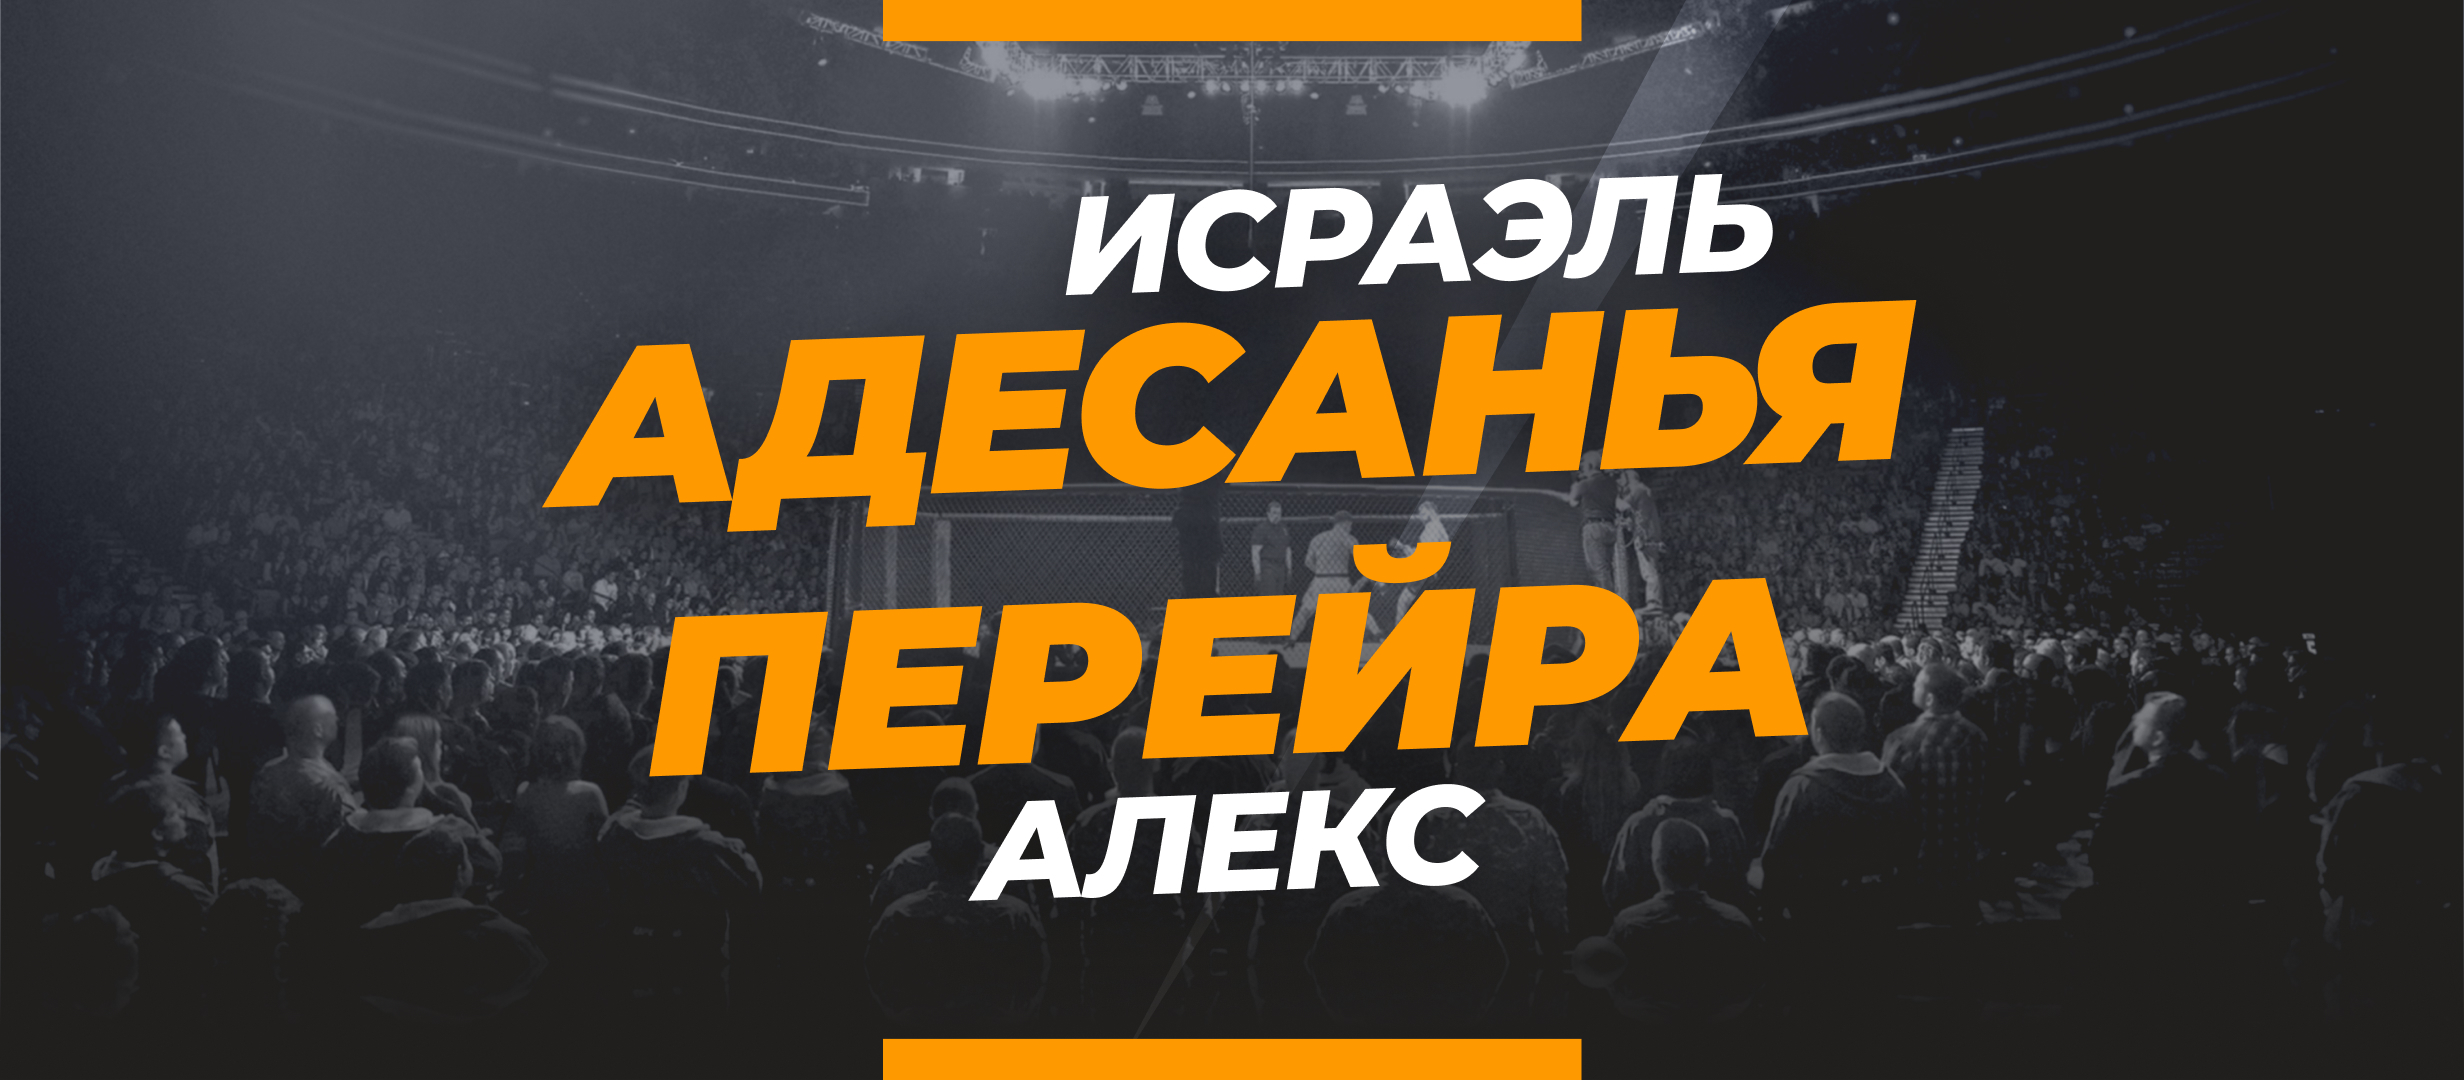 Адесанья — Перейра 2: коэффициенты и ставки на бой UFC 287